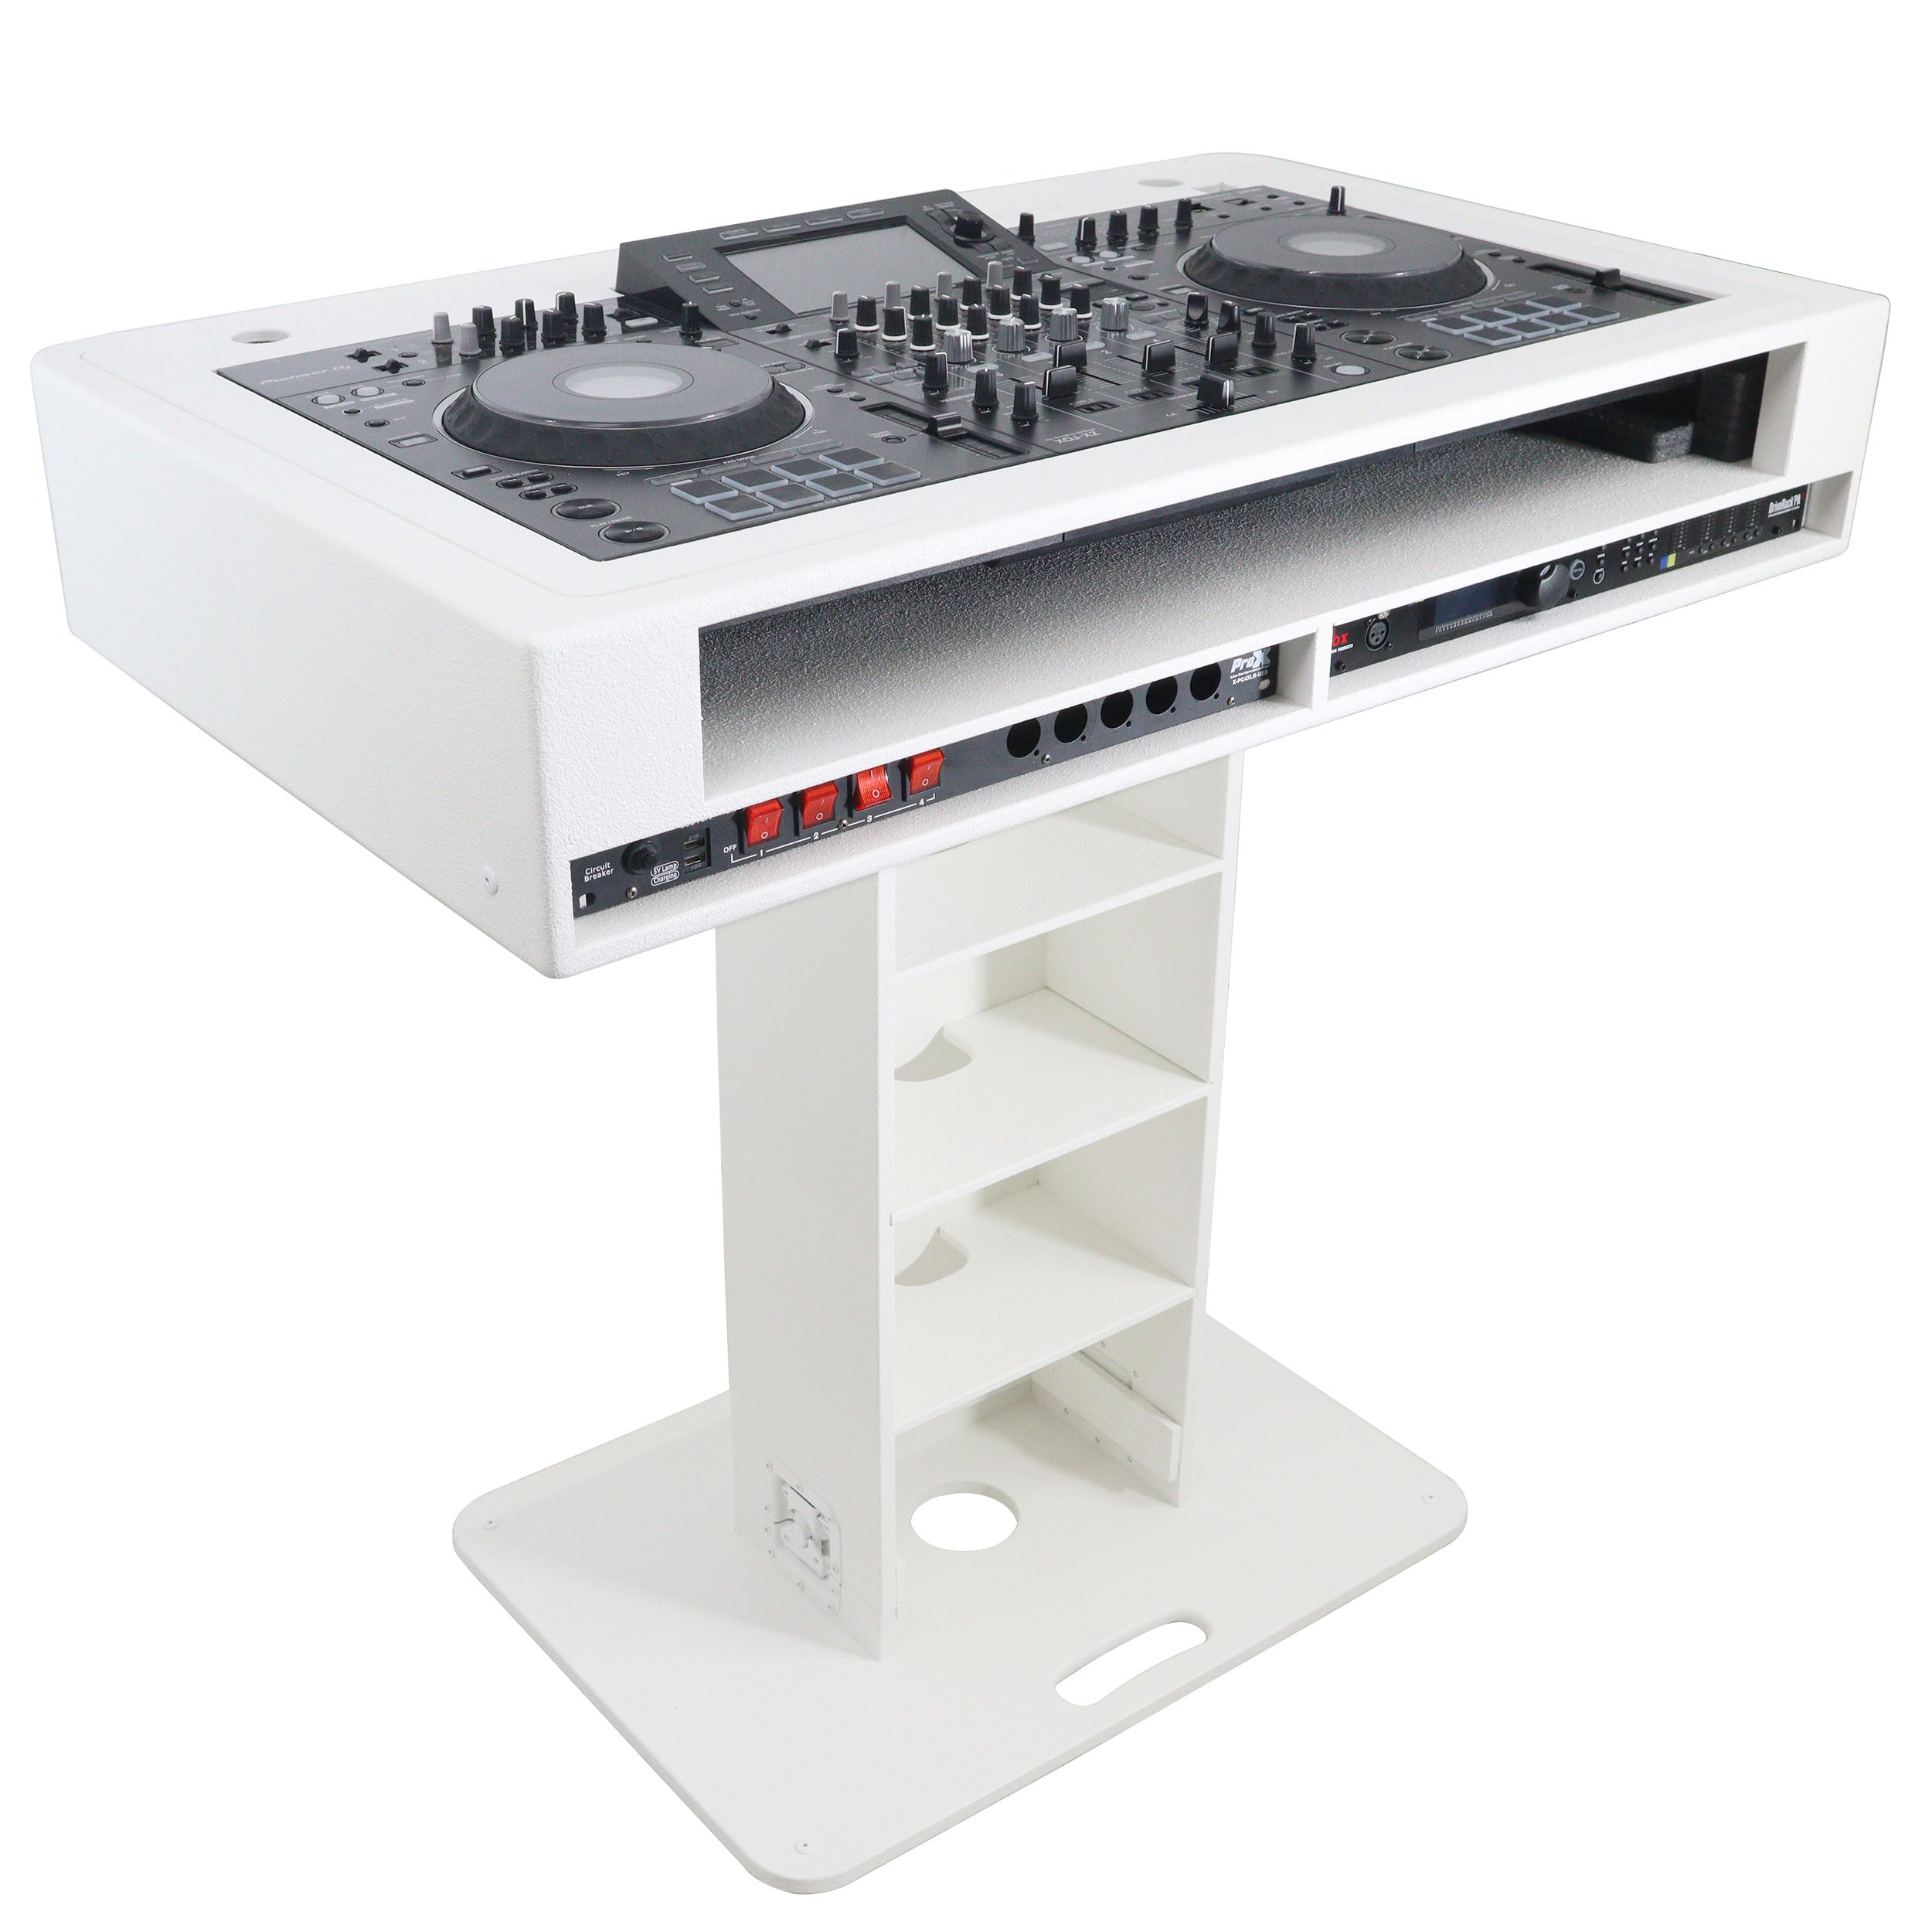 Pro X Control Tower DJ Podium 2x 1U Rack Space with Road Cases for Pioneer DDJ-REV7 XDJ-XZ DDJ-1000 RANE One - White Finish XZF-DJCTW2UCASE